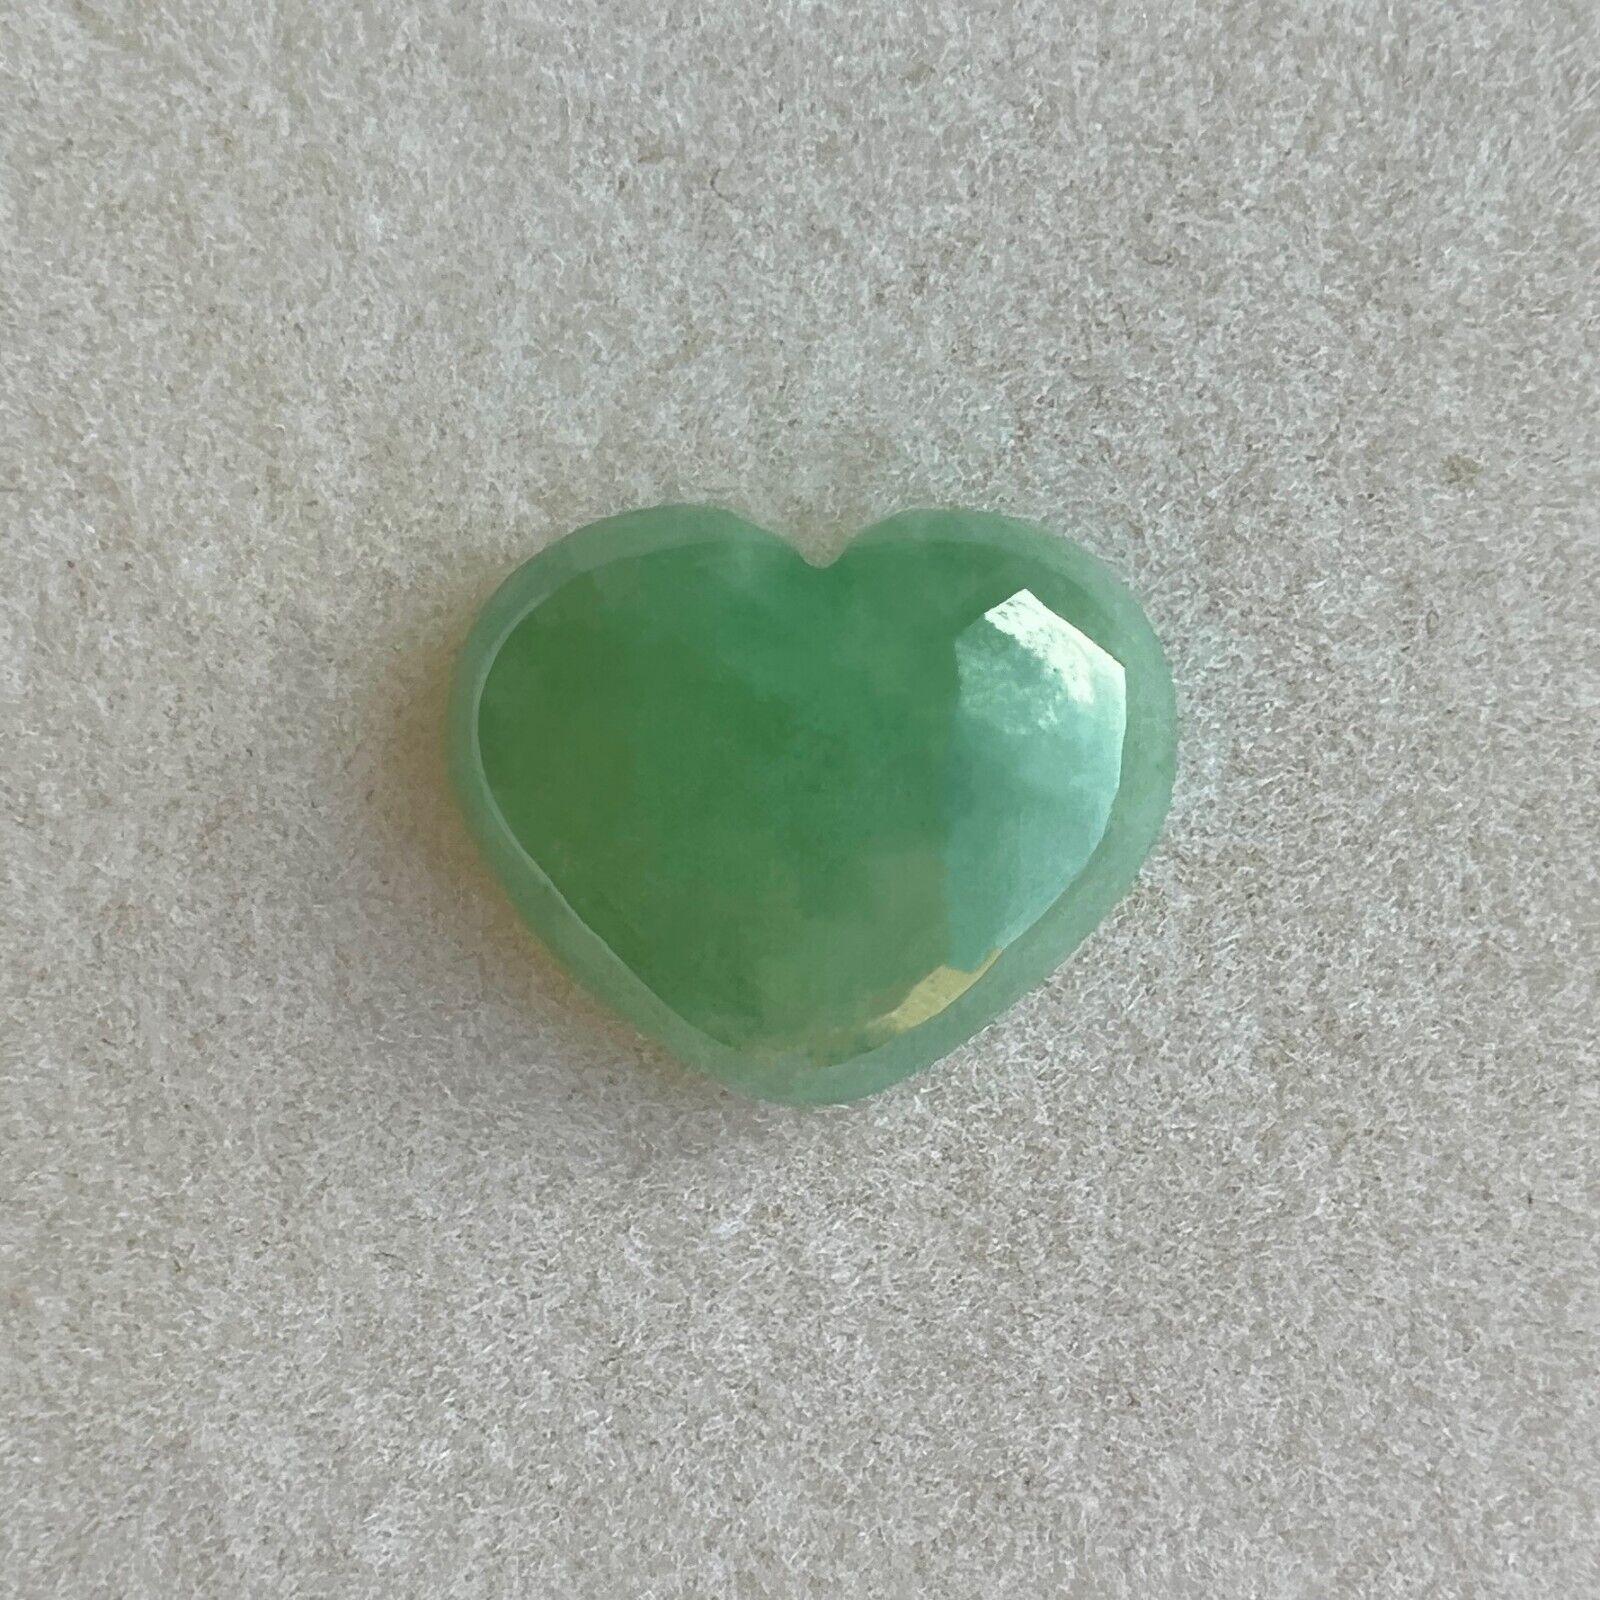 Nature 6.03ct IGI Certified Green Jade 'A' Grade Heart Cabochon Loose Gem

Pierre précieuse en jadéite verte non traitée de grade A, certifiée par l'IGI.
6,03 carats avec une excellente coupe cabochon en forme de cœur et une couleur verte brillante.